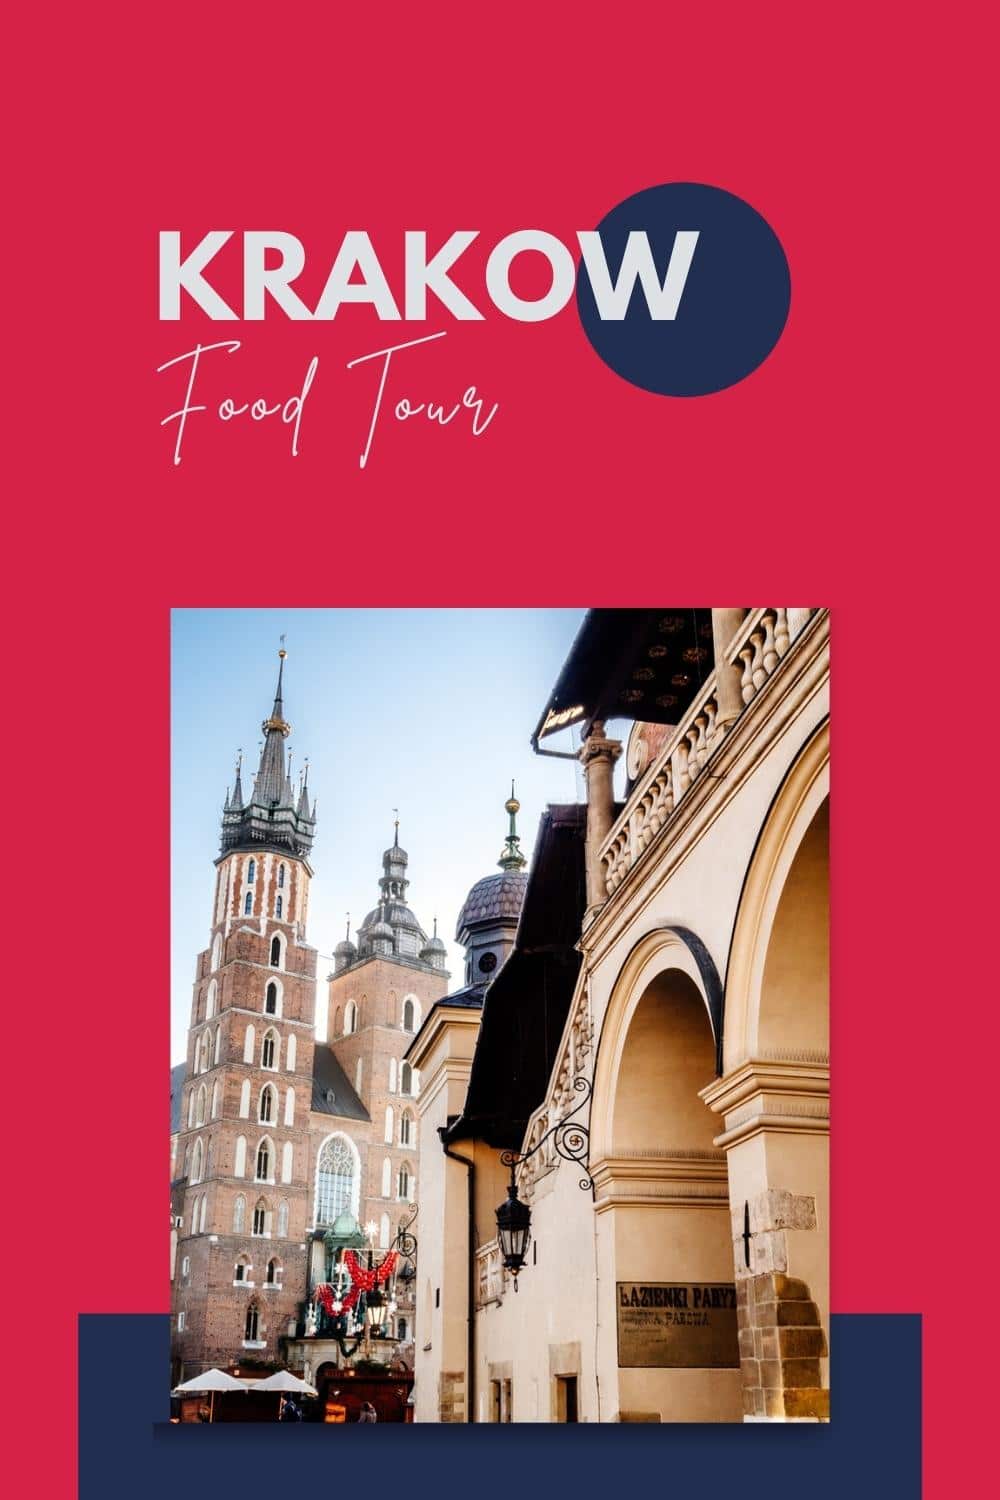 food tours krakow poland